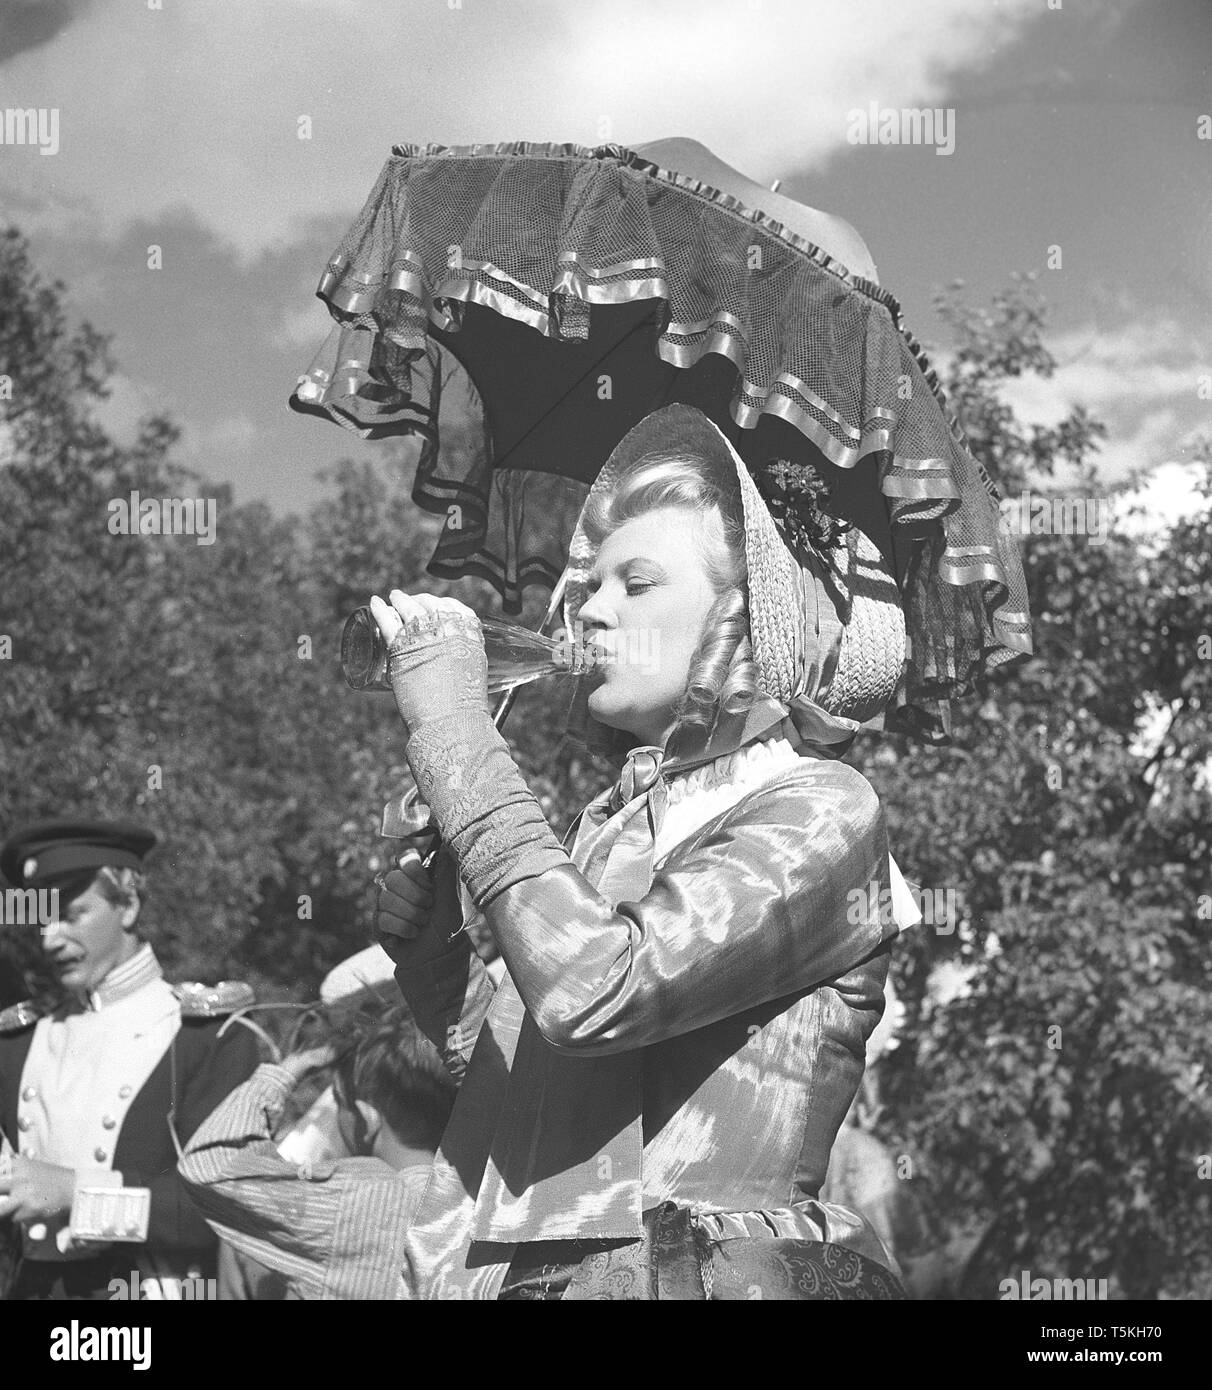 1940 Schauspielerin. Eine junge Frau auf einem Film in historischer Kleidung ist Abkühlung durch das Trinken aus der Flasche. Foto Kristoffersson ref V 48-6. Schweden 1947 Stockfoto